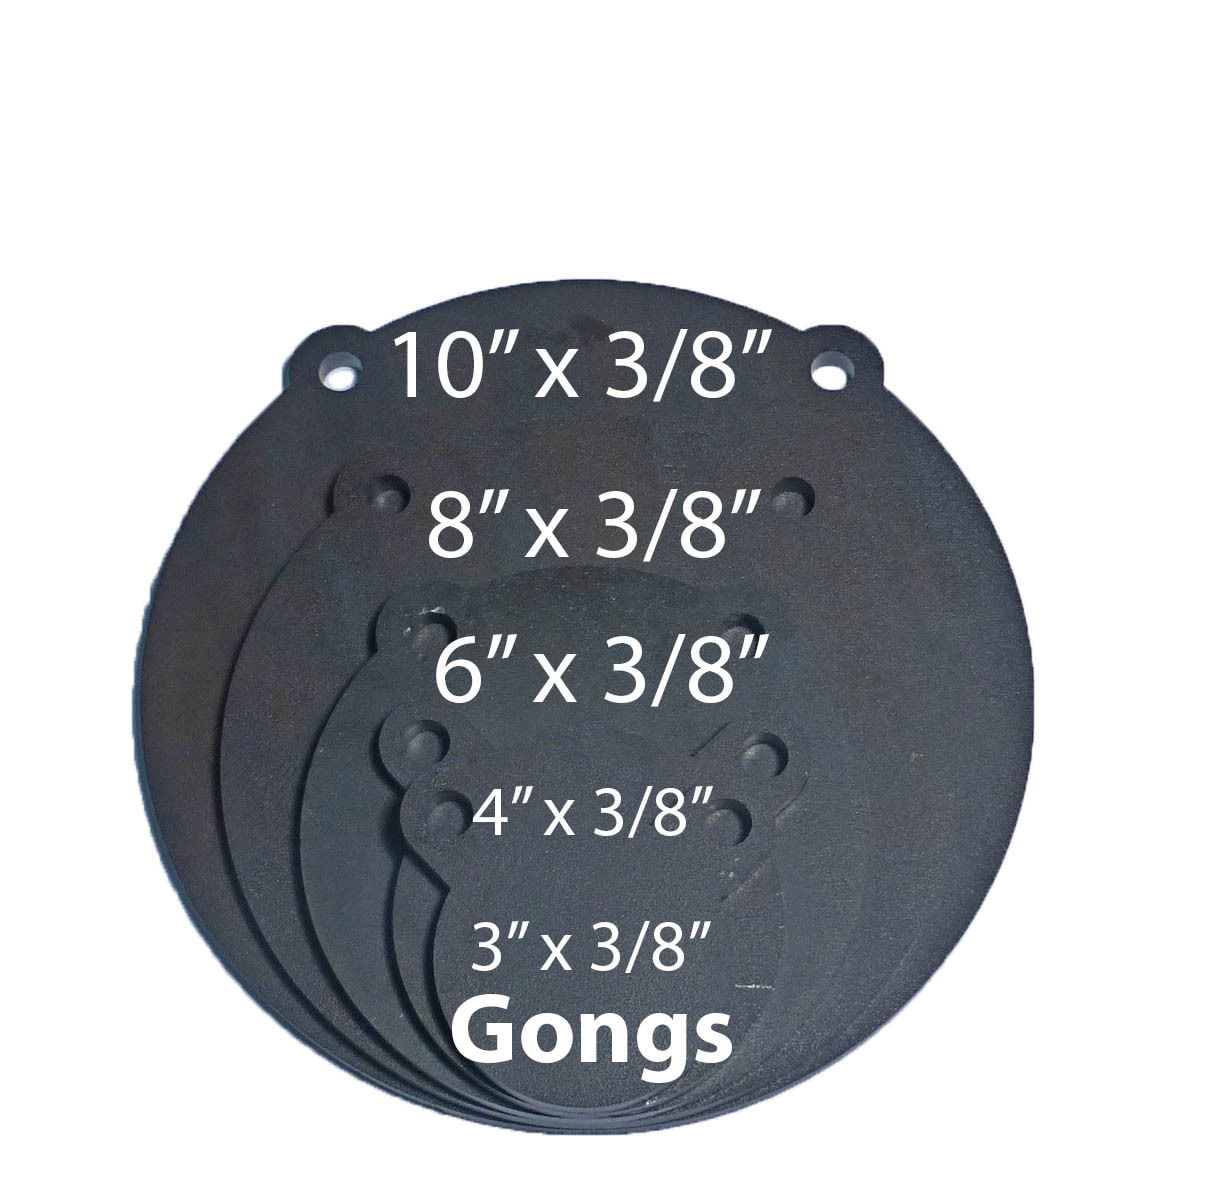 Set of 2 AR500 Steel Target Gong 1/2" x 10" Painted Black Shooting Practice Rang 